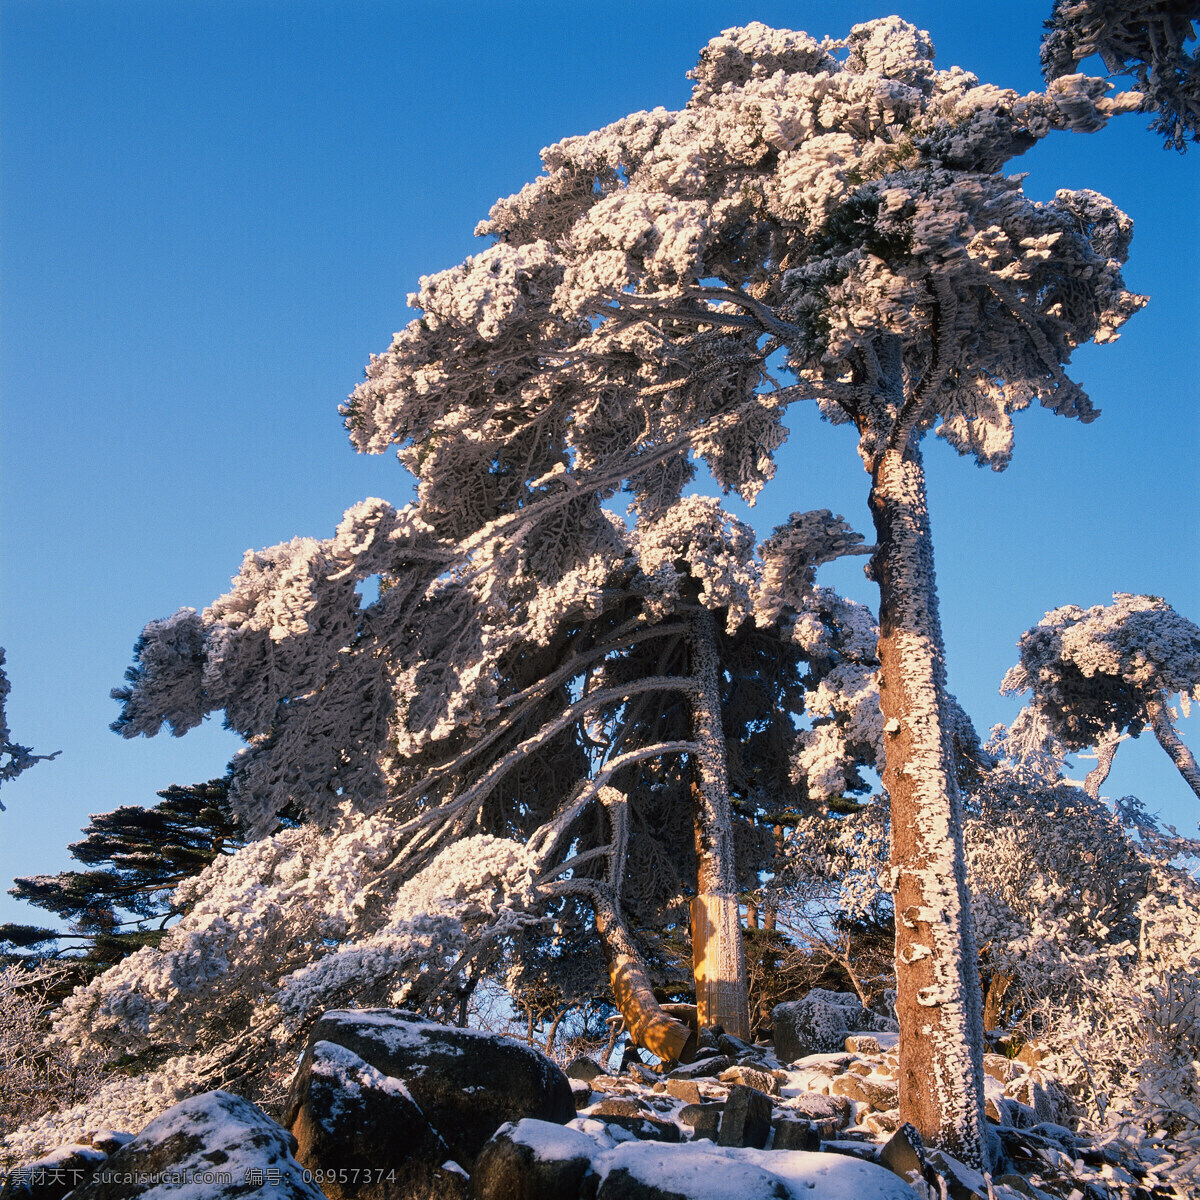 高山 雪松 景色 雪山 岩石 陡峭 天空 蓝天 松树 挺立 雪白 景观 高清图片 山水风景 风景图片